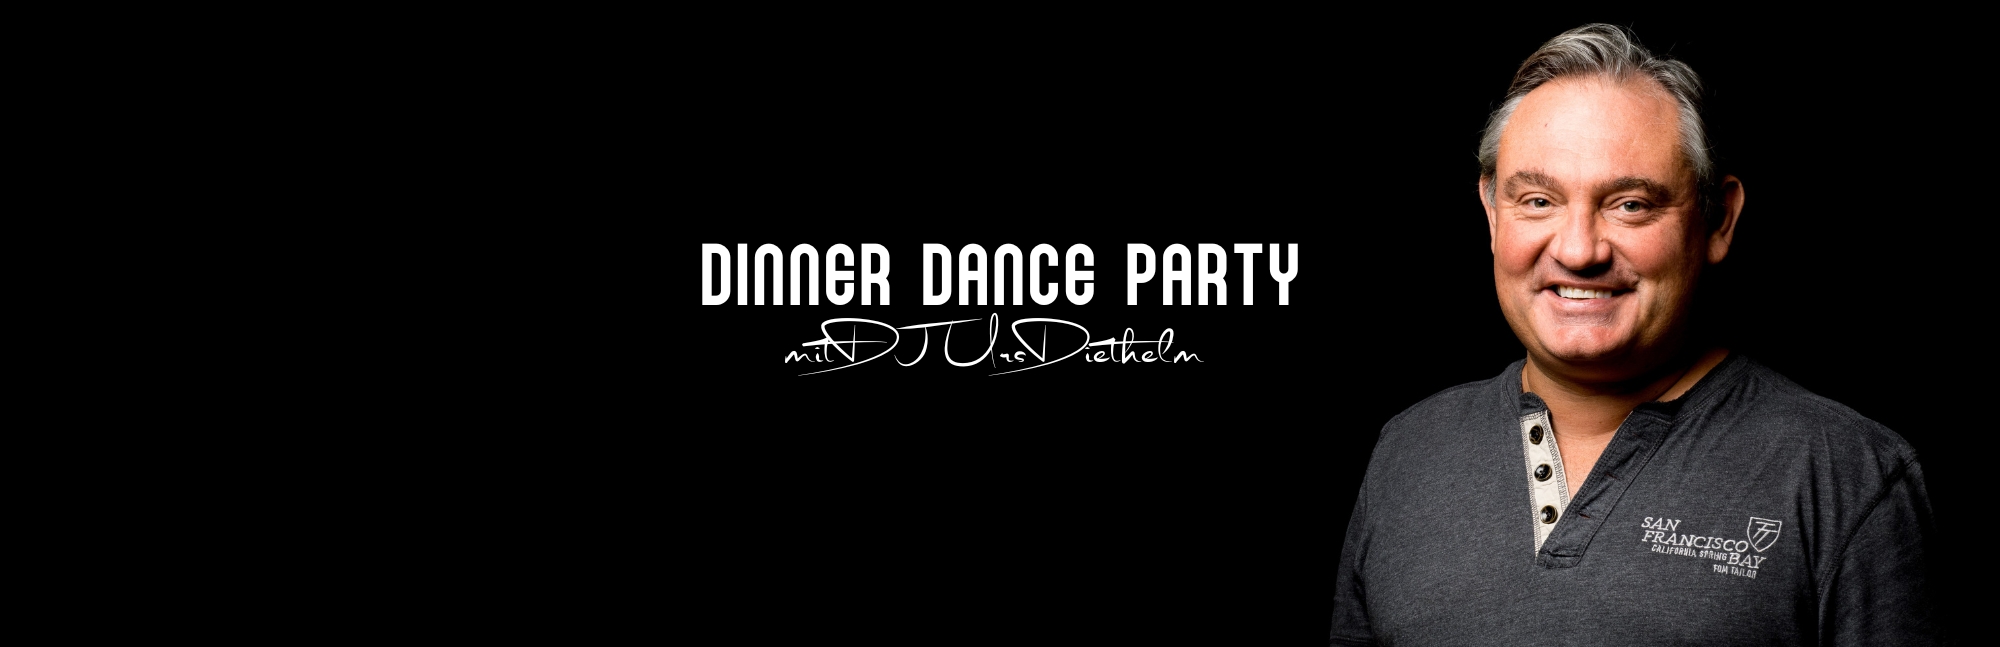 Dinner Dance Party mit DJ Urs Diethelm